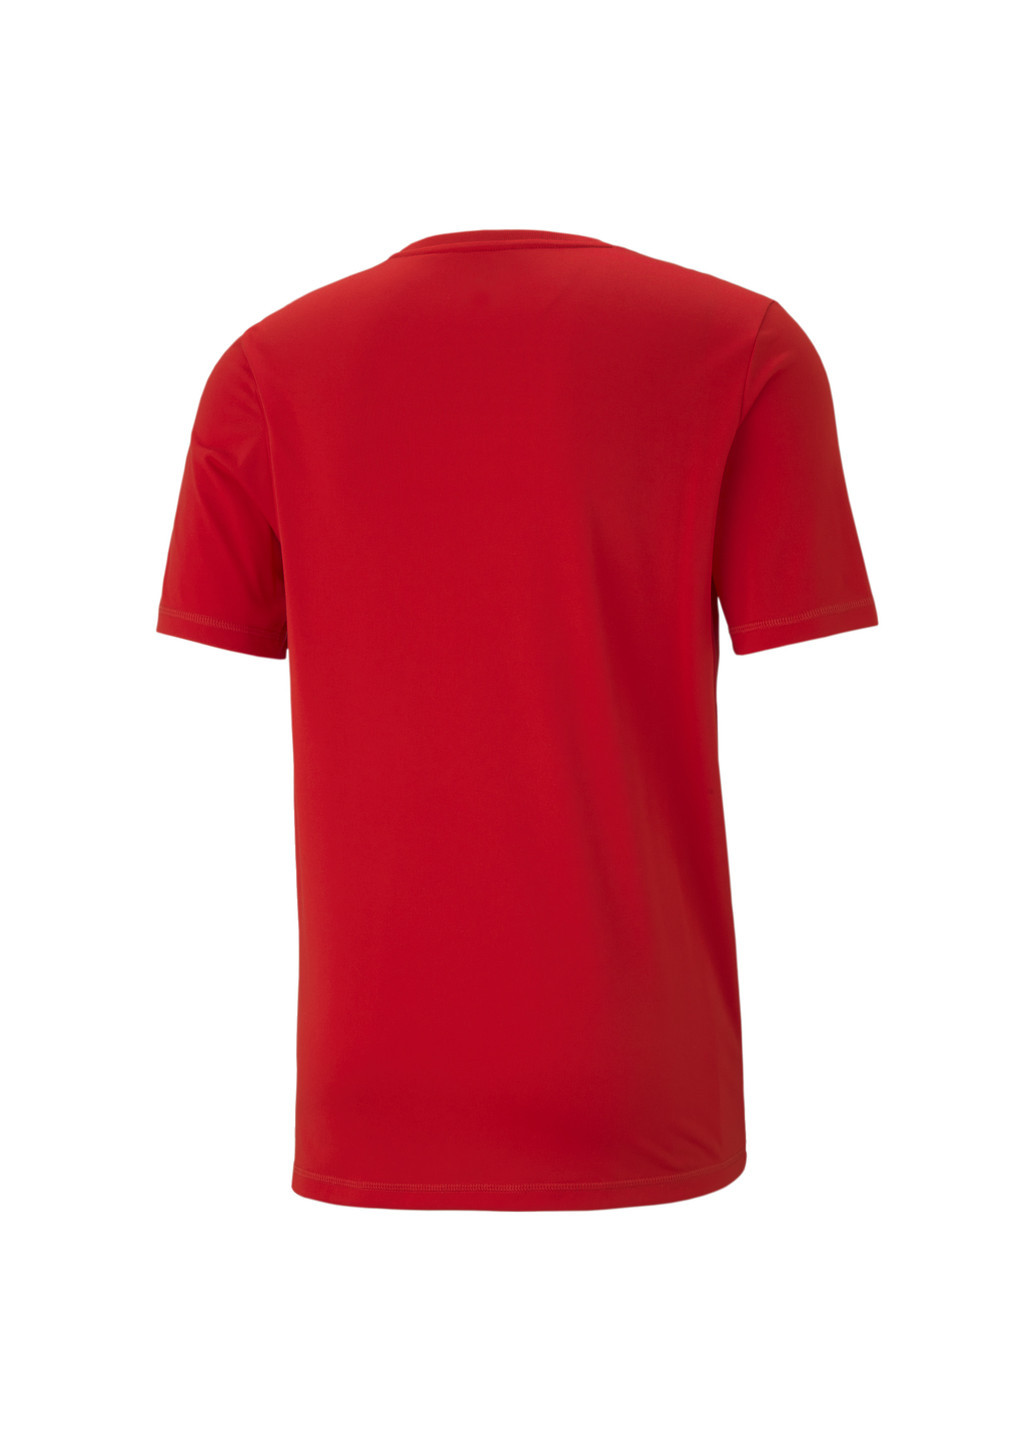 Червона футболка active big logo men’s tee Puma